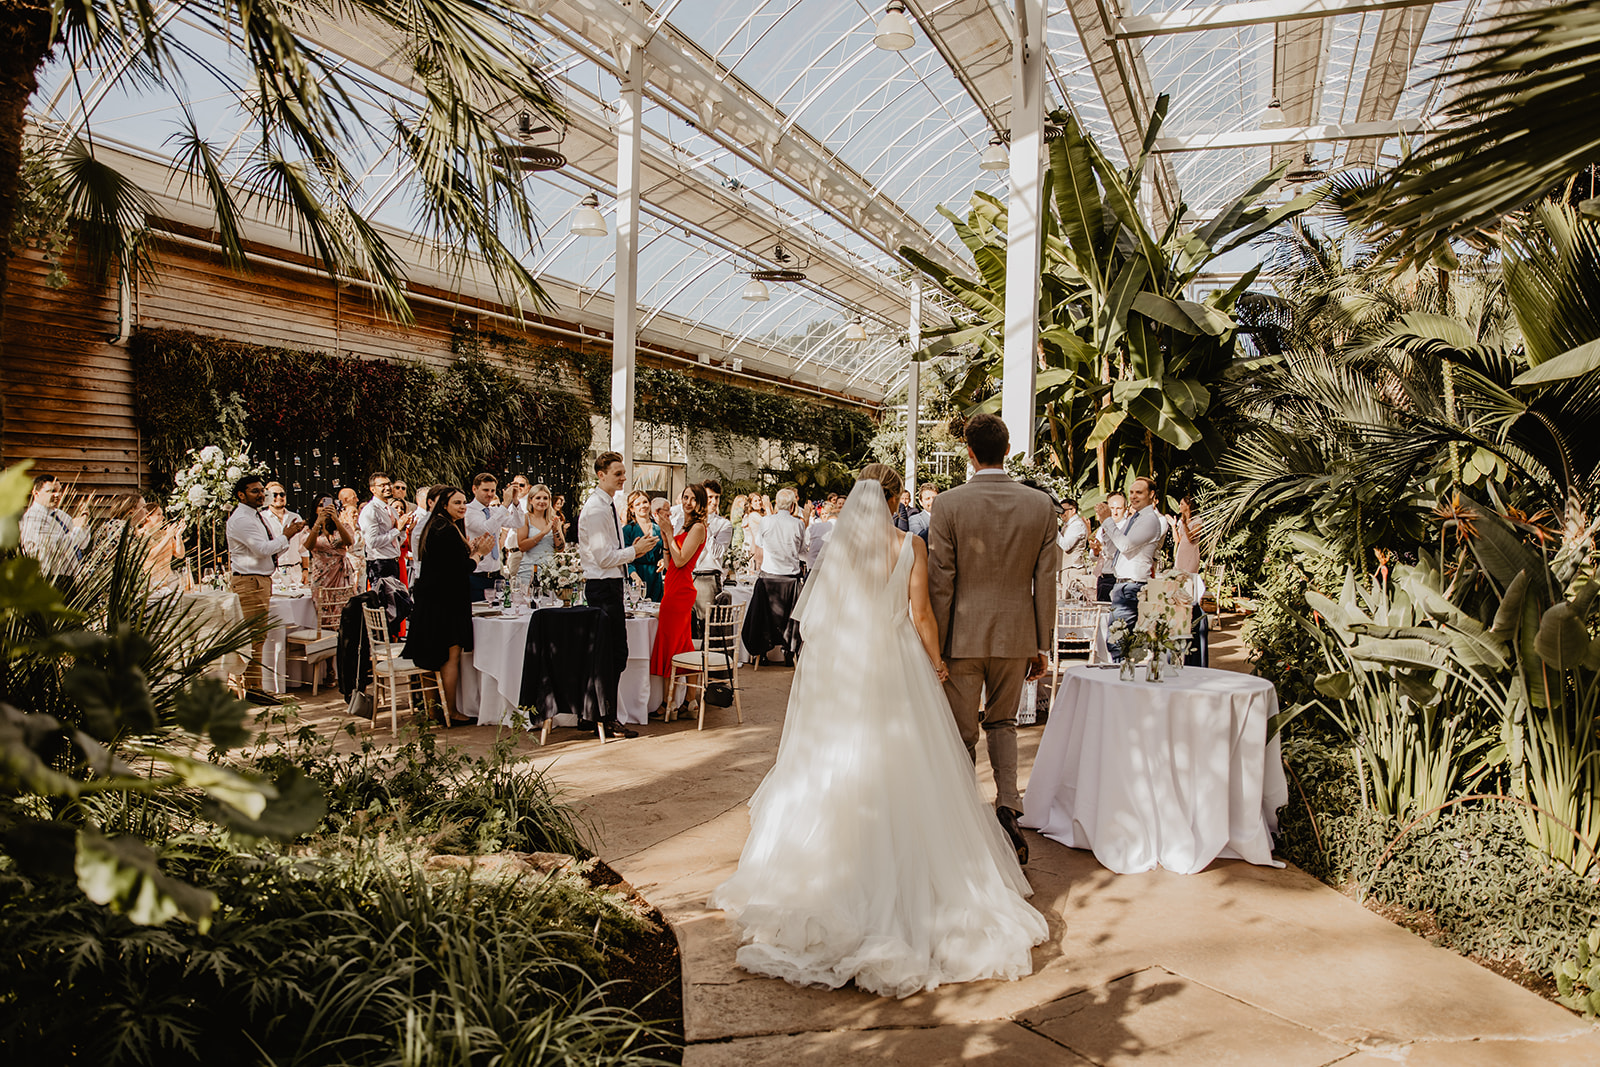 Wedding reception at a RHS Gardens Wisley Wedding. By Olive Joy Photography